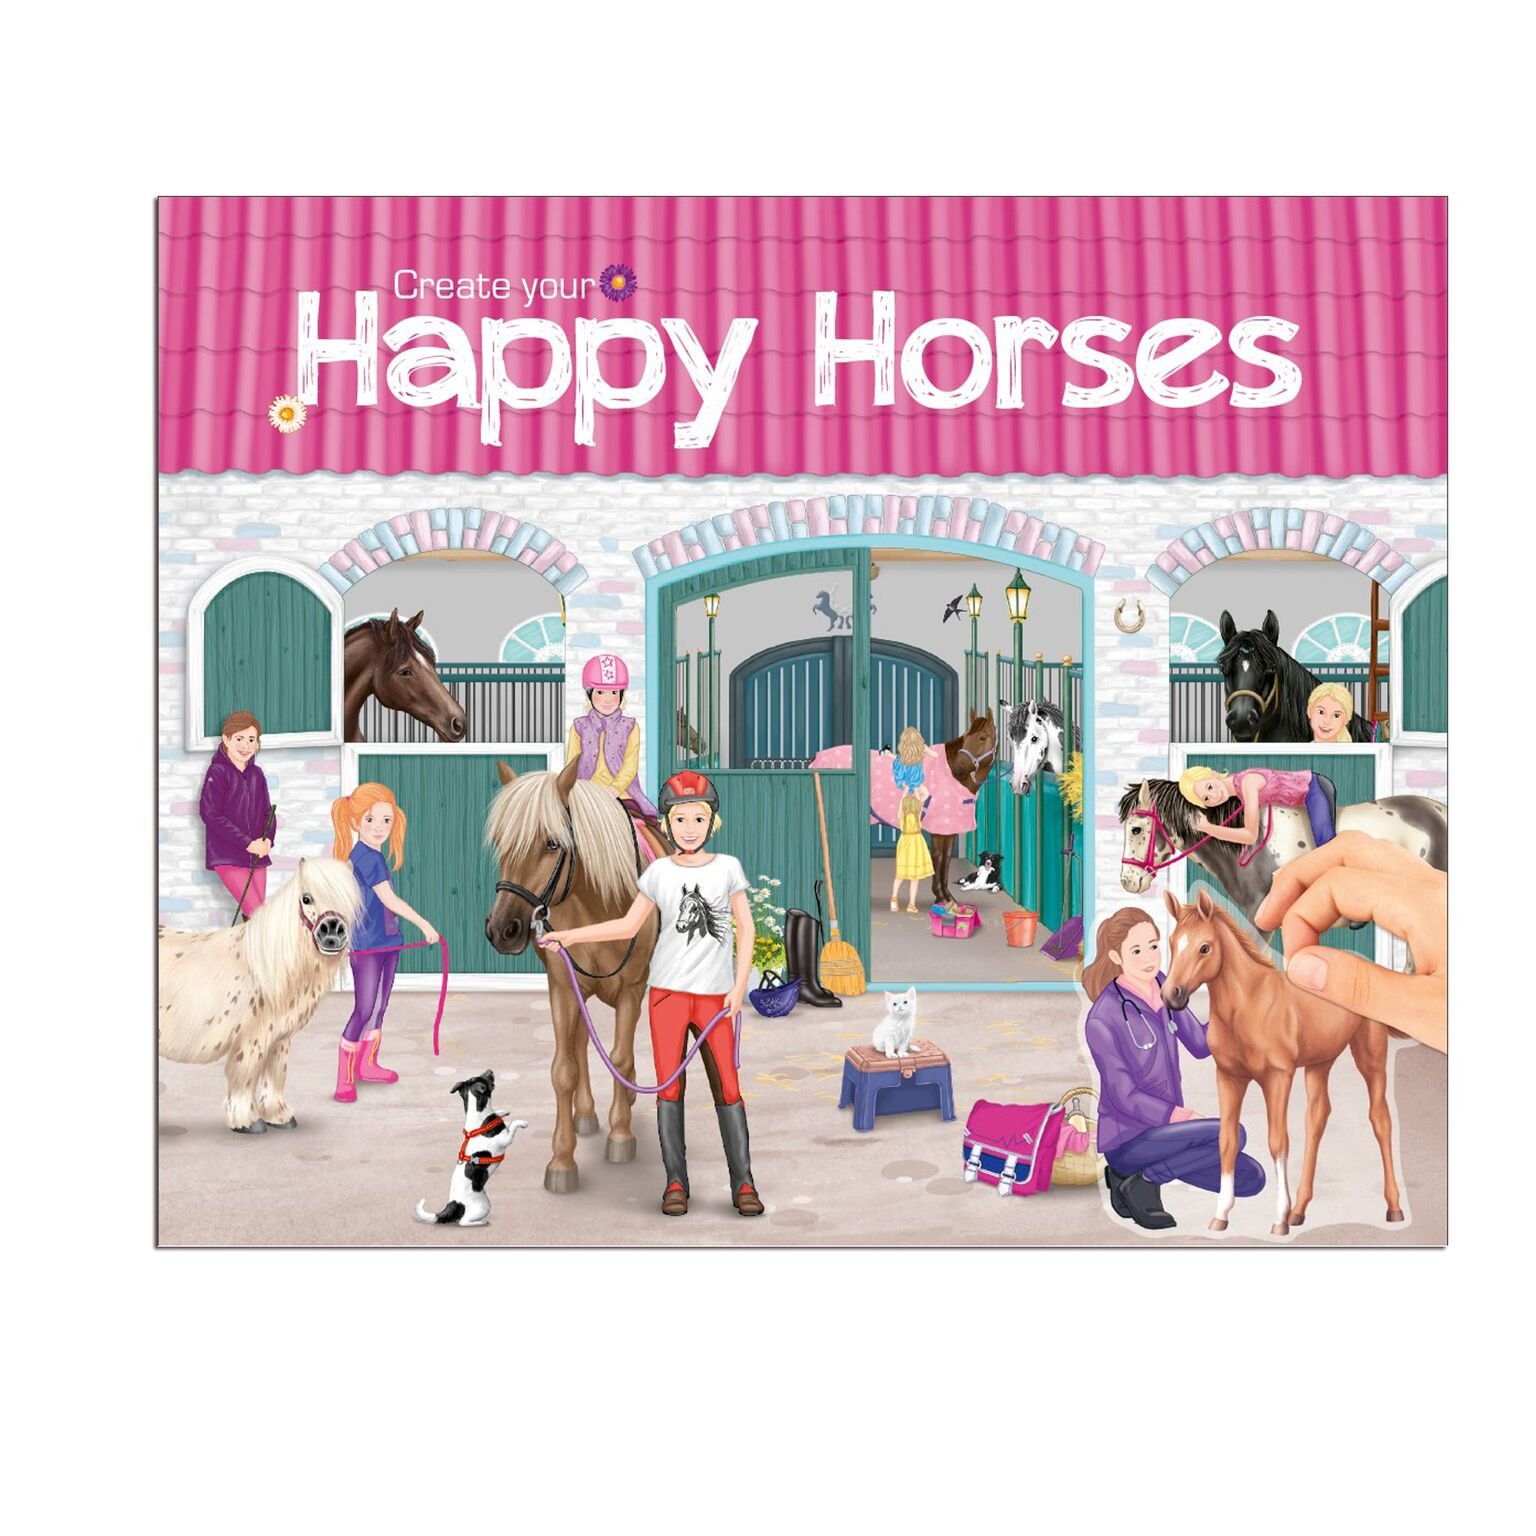 Creative Studio - Create your Happy Horses (0410176)